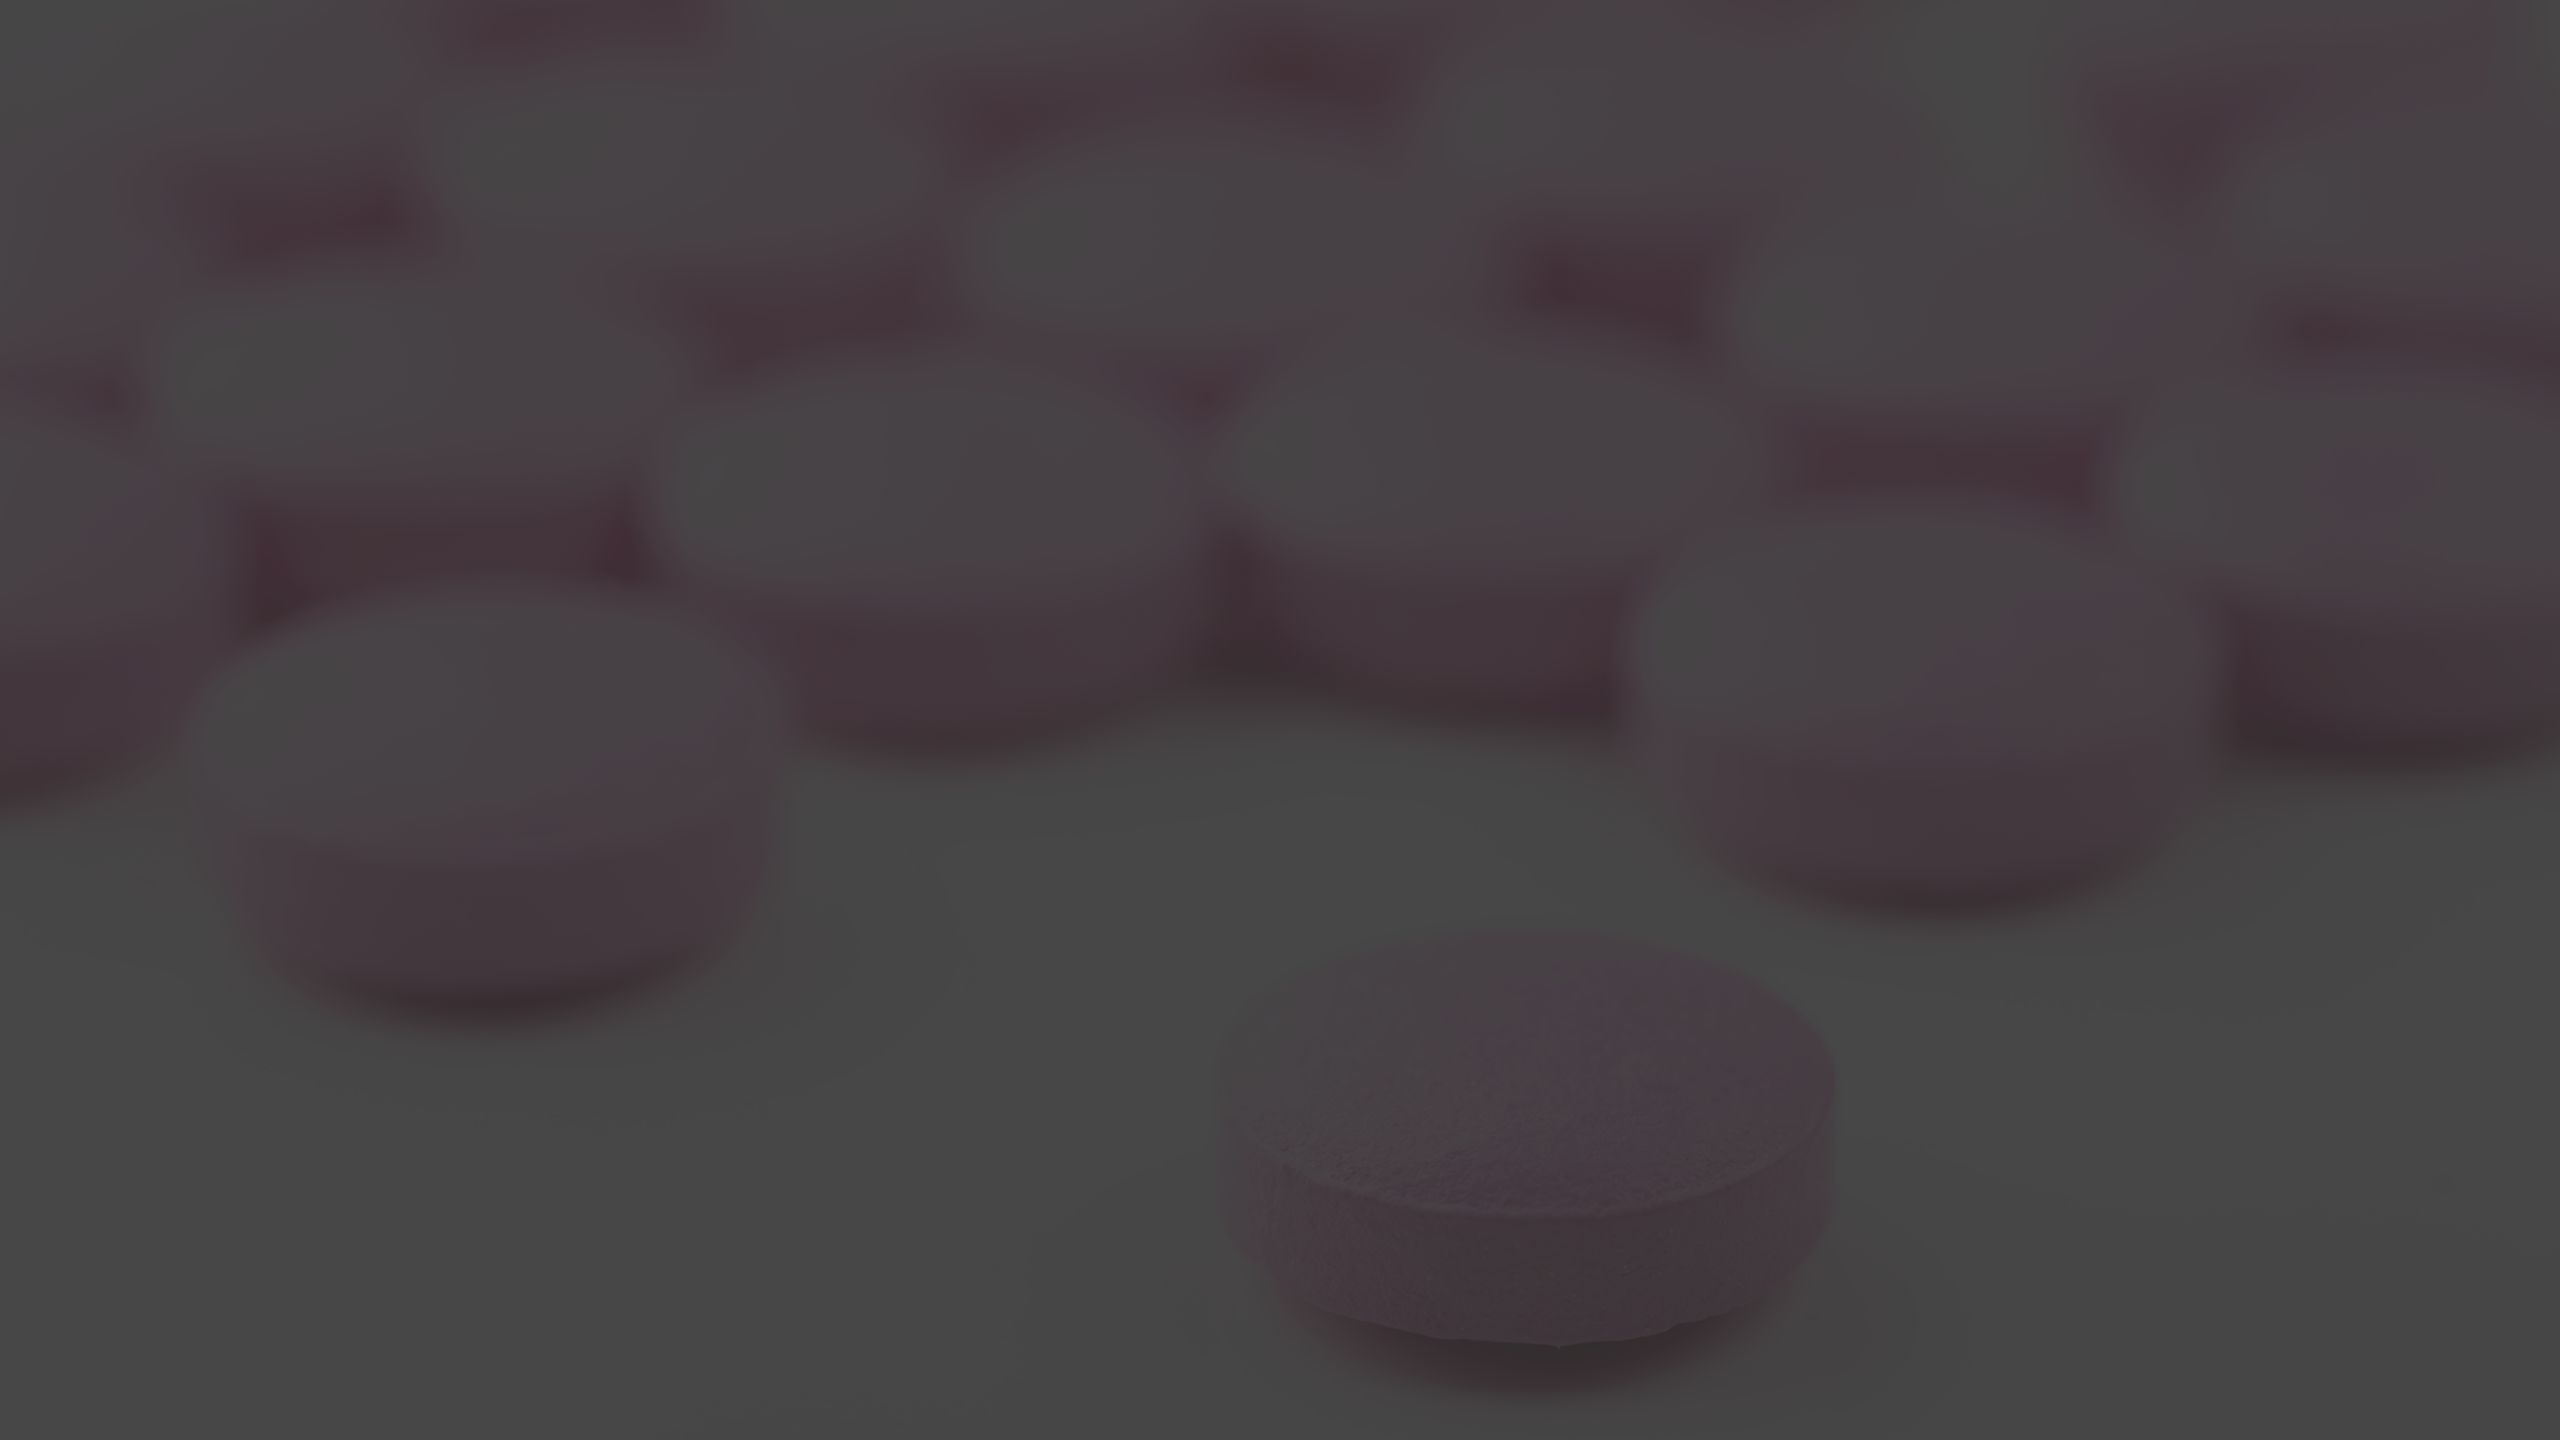 pink round pills on white background